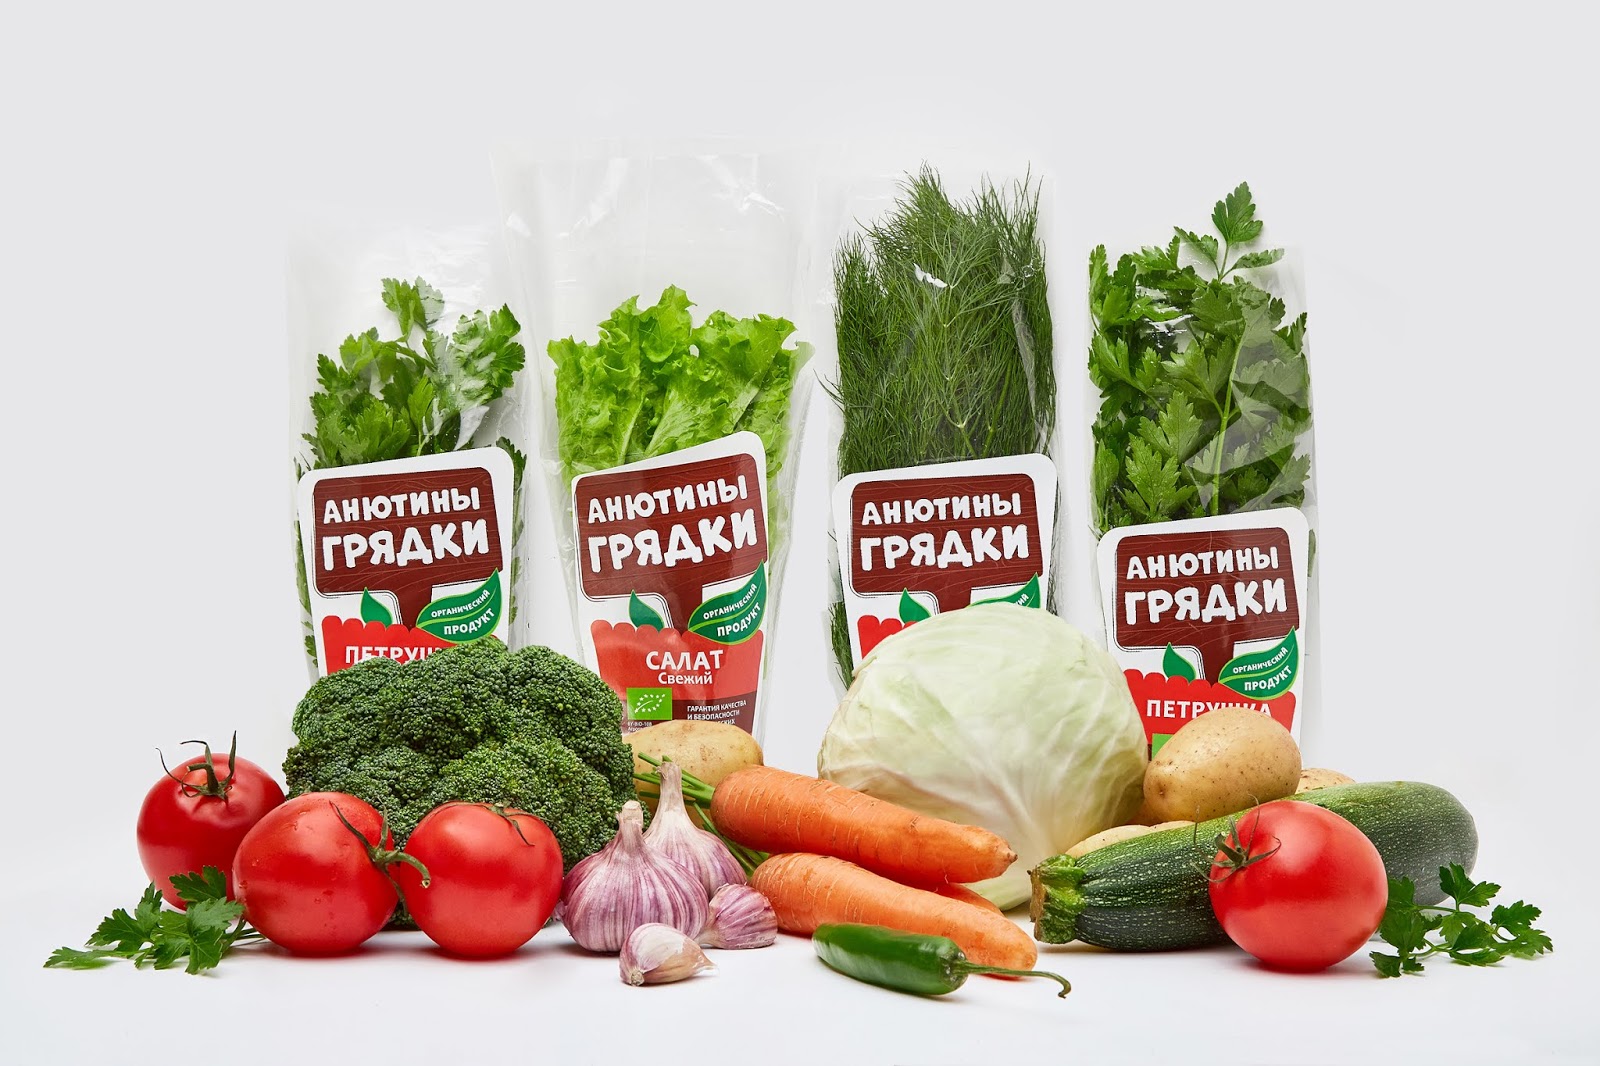 有机蔬菜西安oe欧亿体育app官方下载
品牌包装设计